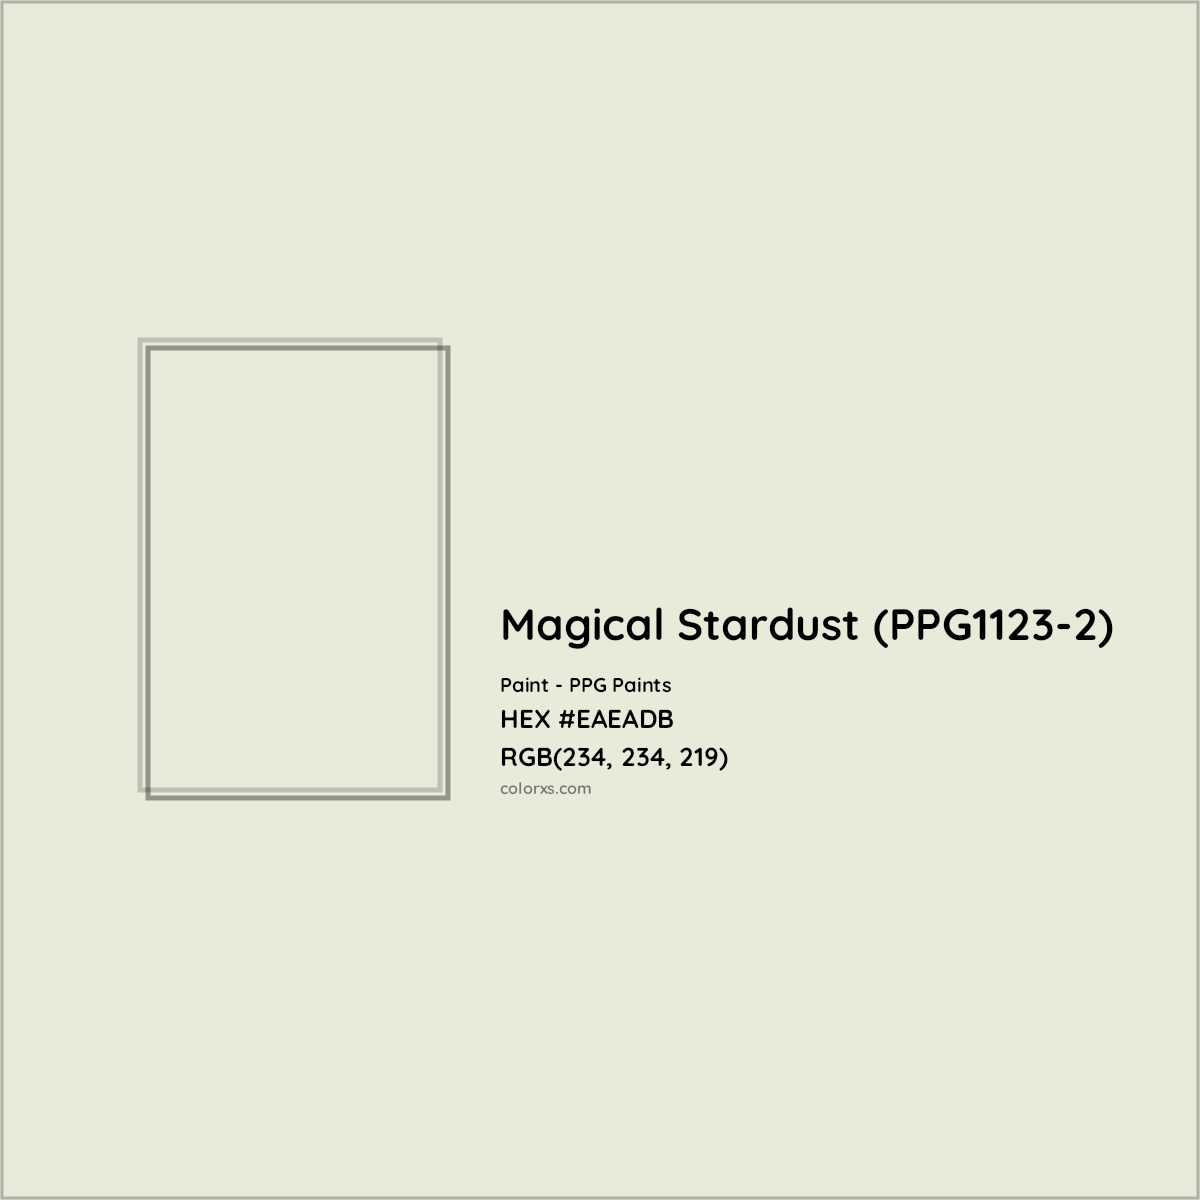 HEX #EAEADB Magical Stardust (PPG1123-2) Paint PPG Paints - Color Code